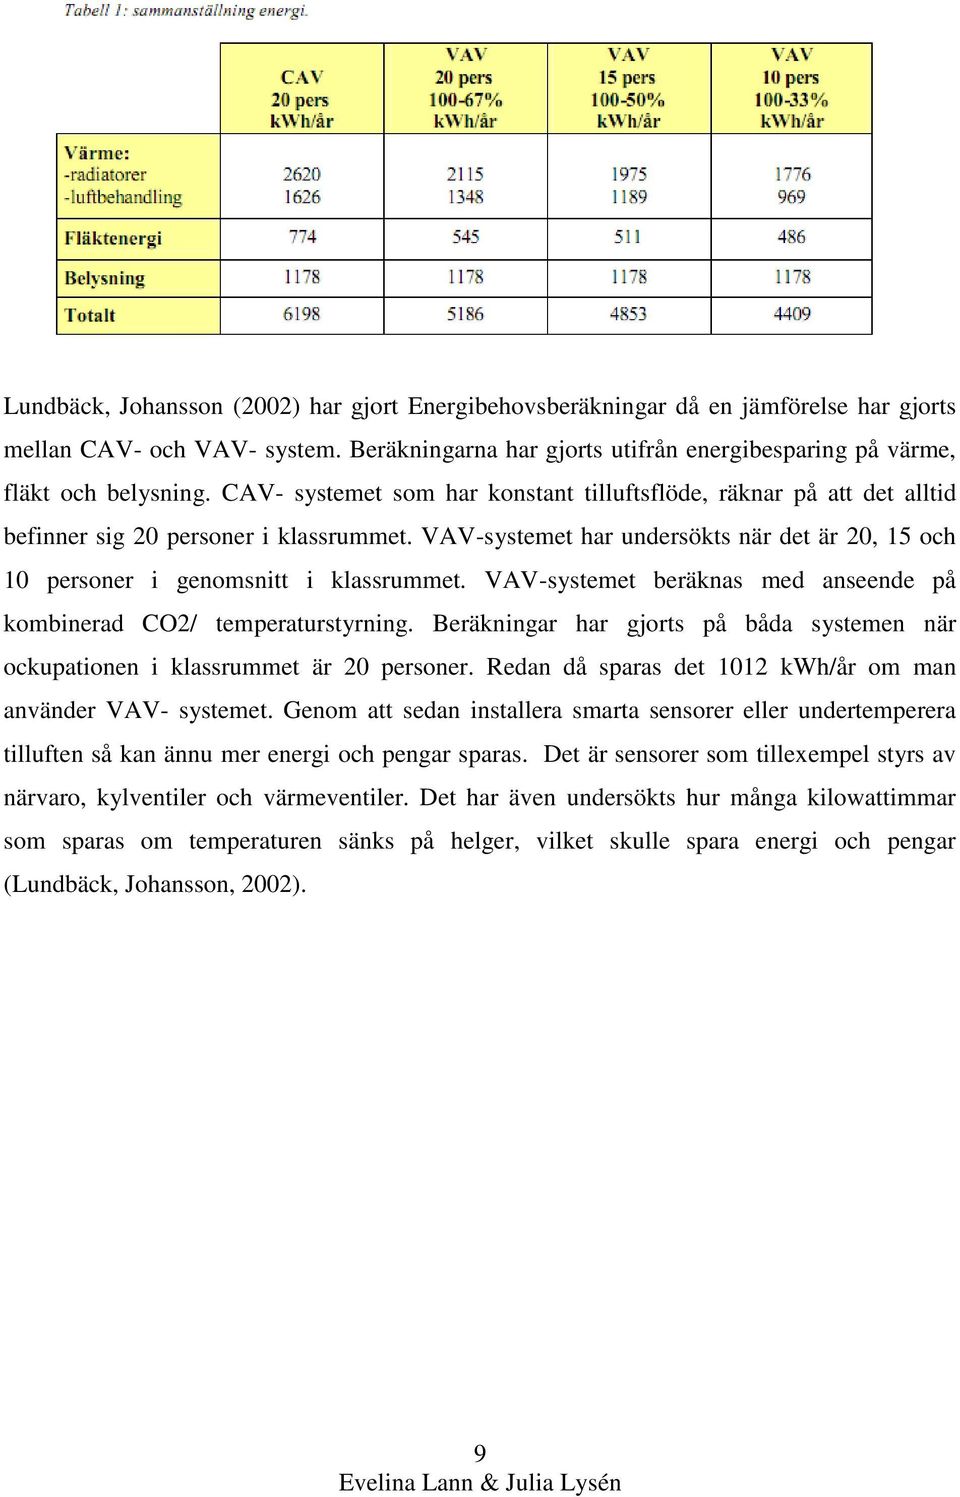 VAV-systemet beräknas med anseende på kombinerad CO2/ temperaturstyrning. Beräkningar har gjorts på båda systemen när ockupationen i klassrummet är 20 personer.